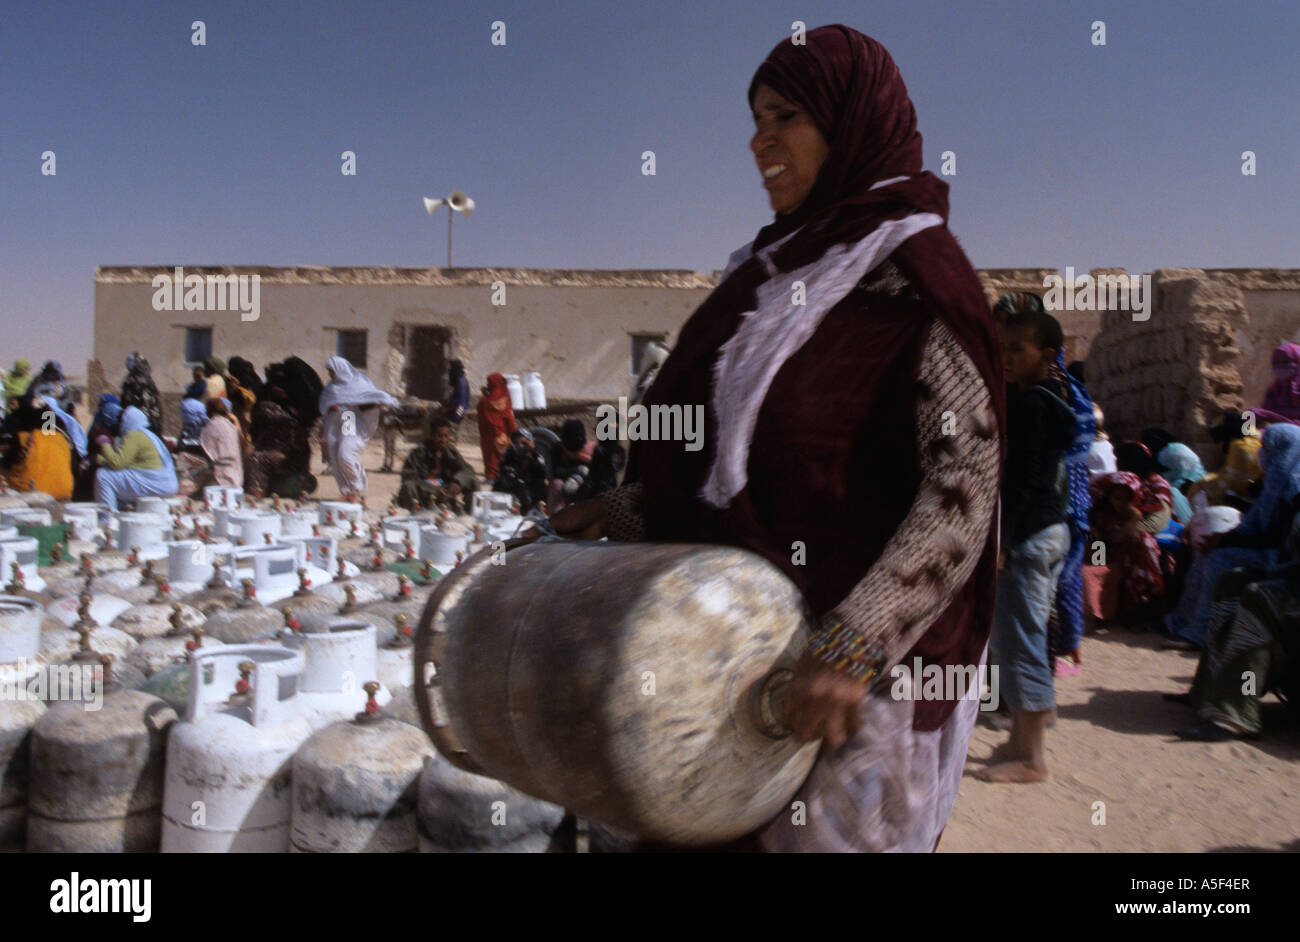 Menschen aus dem saharauischen Flüchtlingslager in Tindouf westlichen Algerien Gasflaschen einsammeln Stockfoto